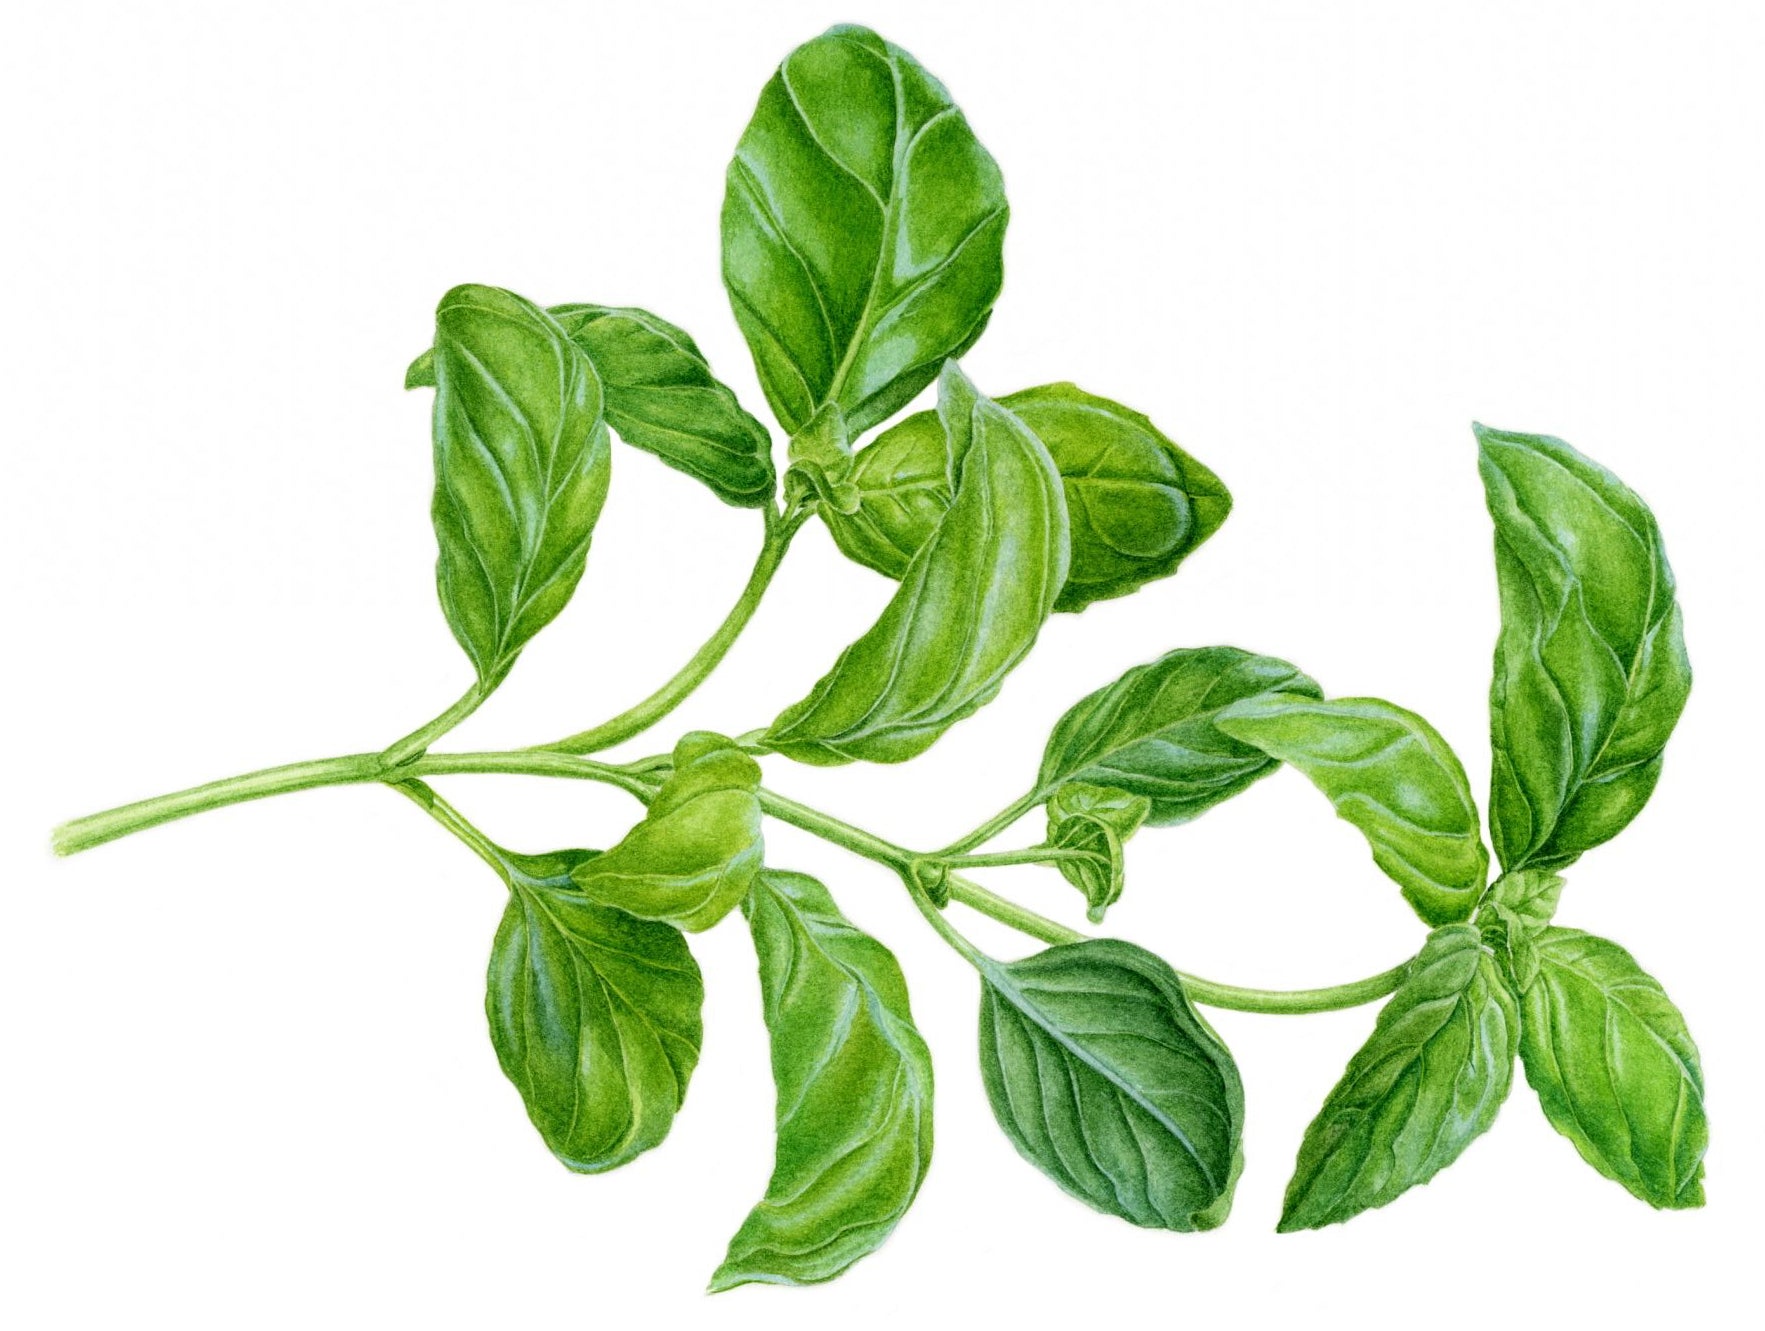 Basil botanical illustration